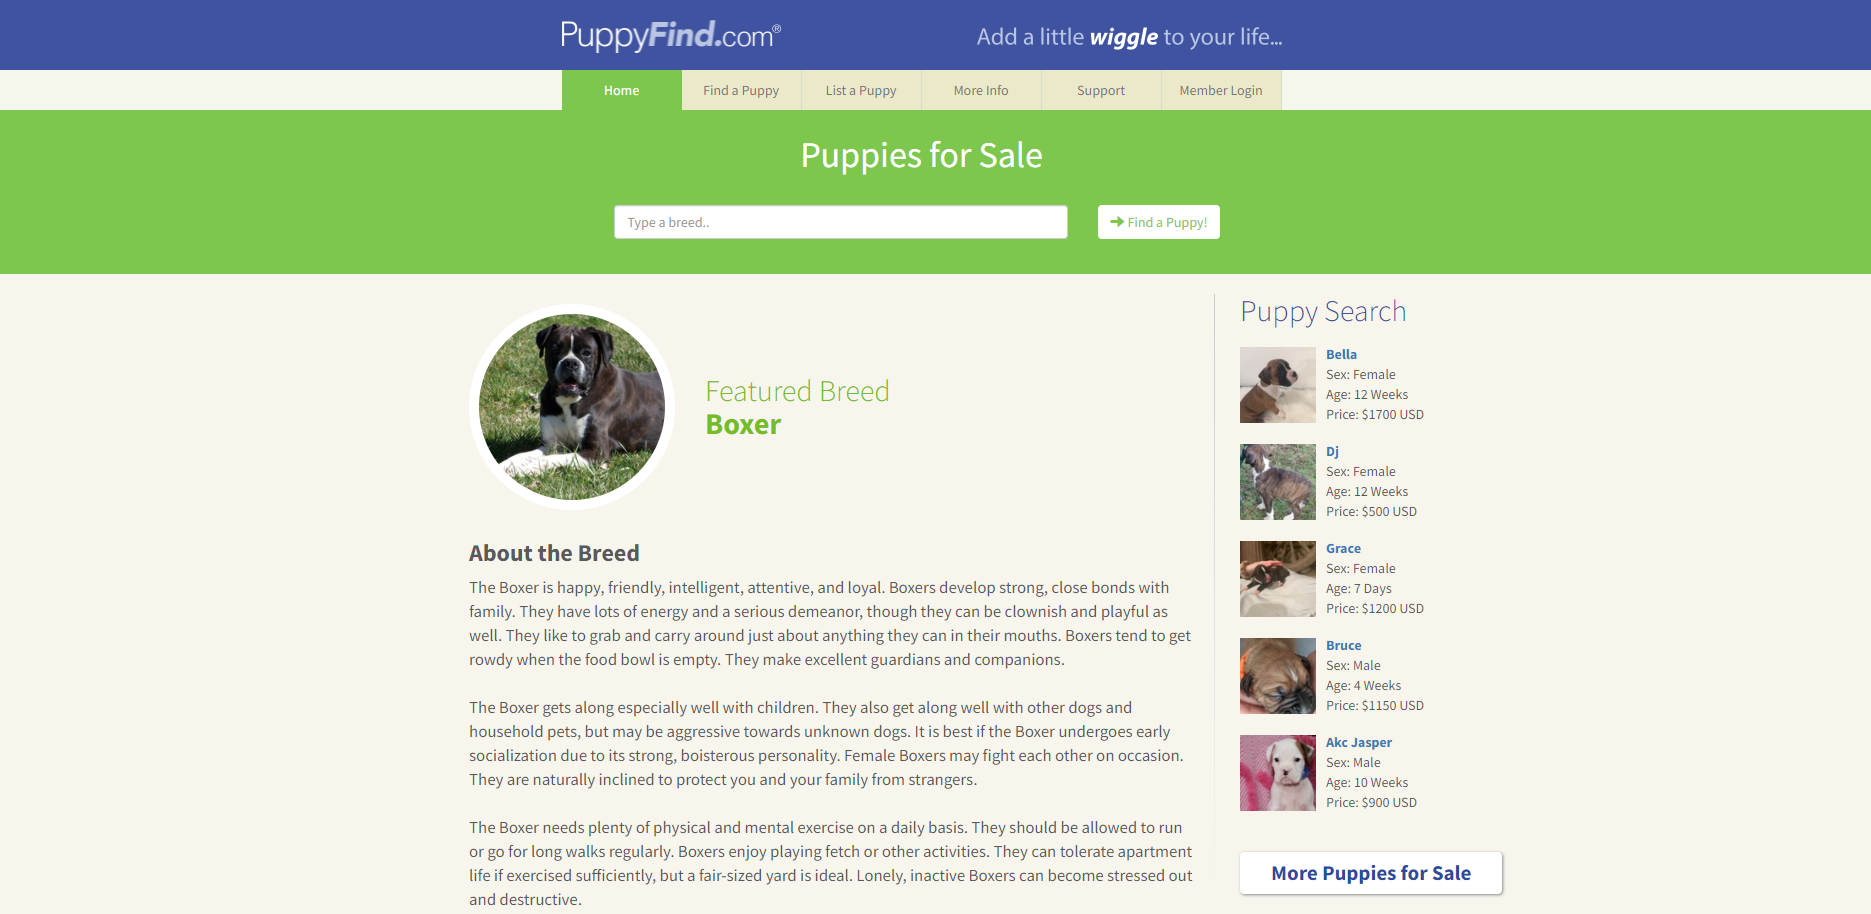 PuppyFind 即将升级为Puppies.com